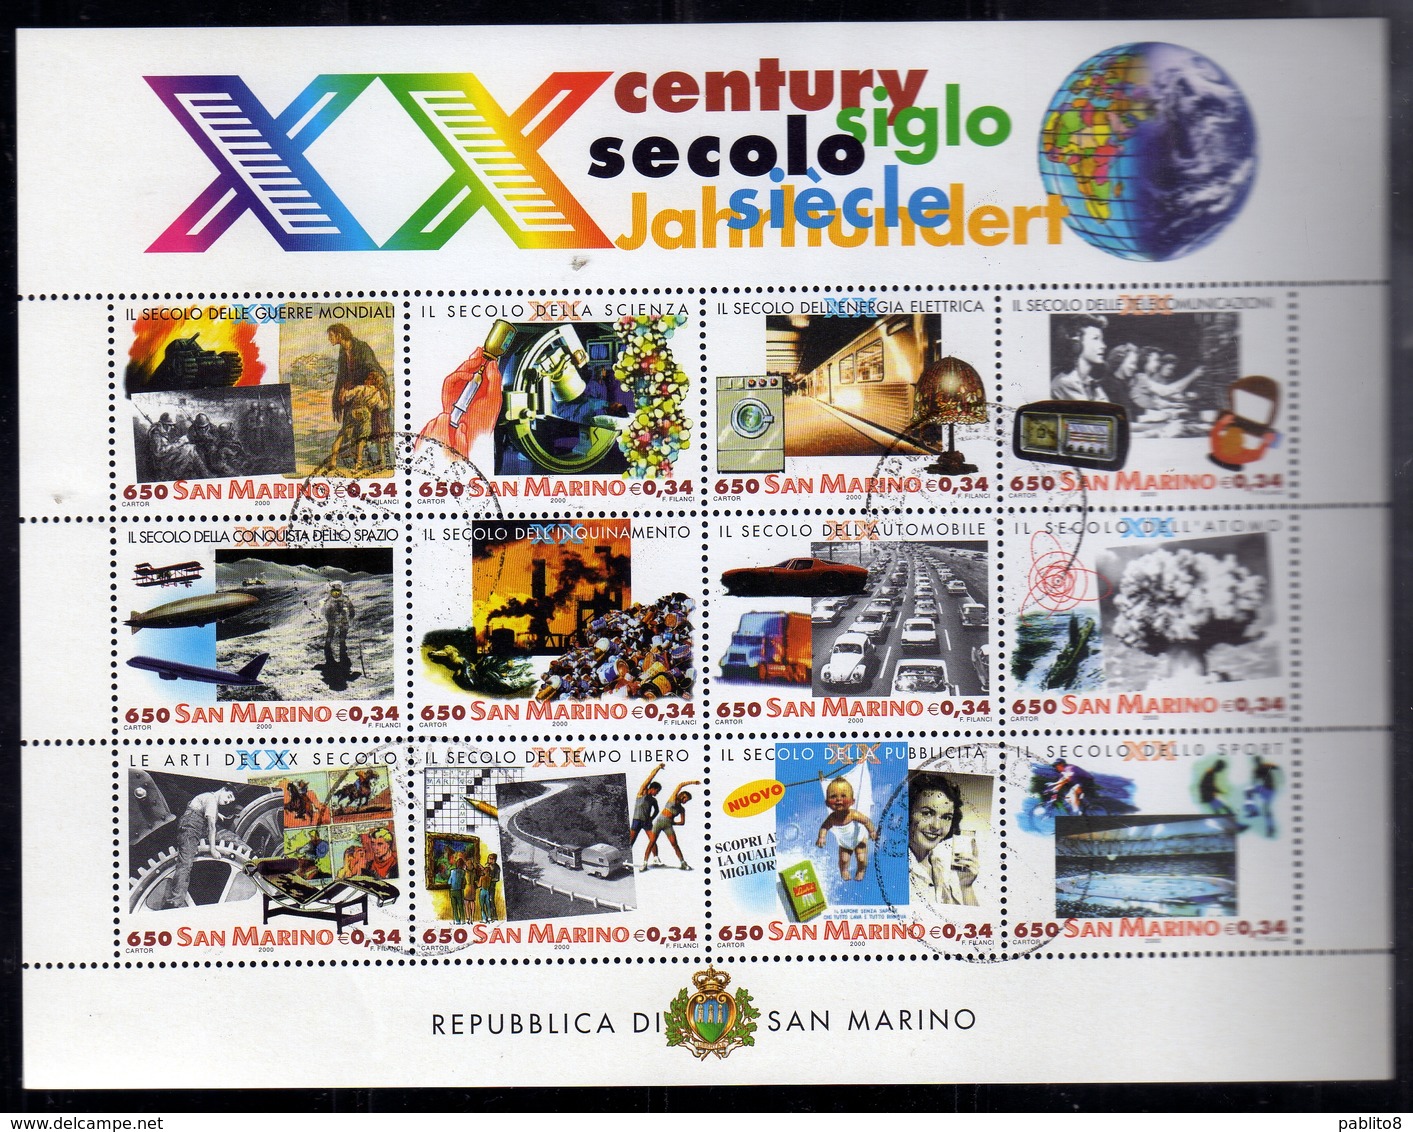 REPUBBLICA DI SAN MARINO 2000 SECOLO 20° CENTURY BLOCCO FOGLIETTO SERIE BLOCK SHEET SET BLOC FEUILLET USED OBLITERE' - Used Stamps